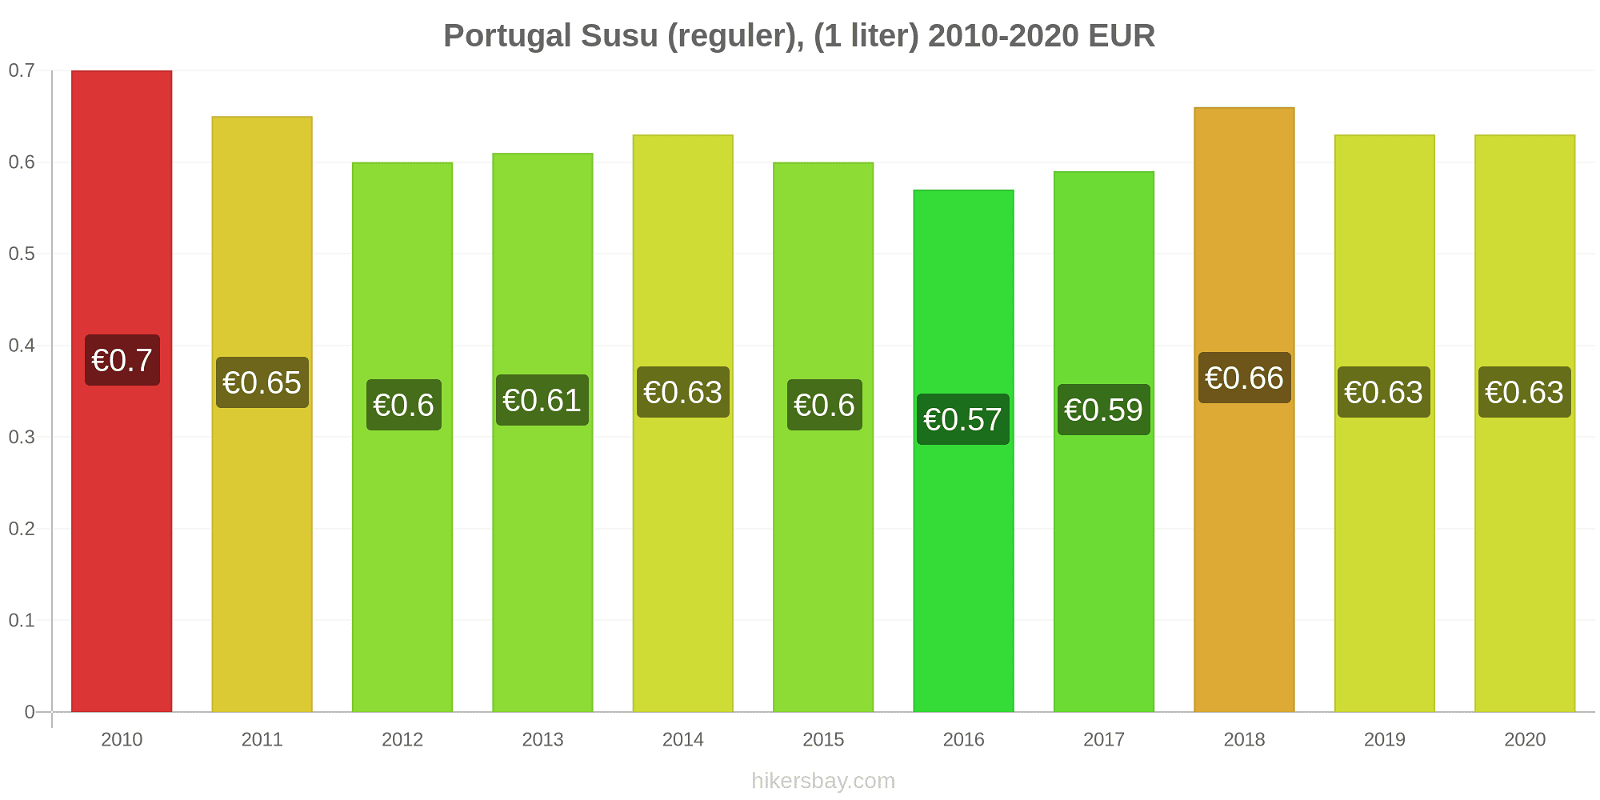 Portugal perubahan harga Susu (reguler), (1 liter) hikersbay.com